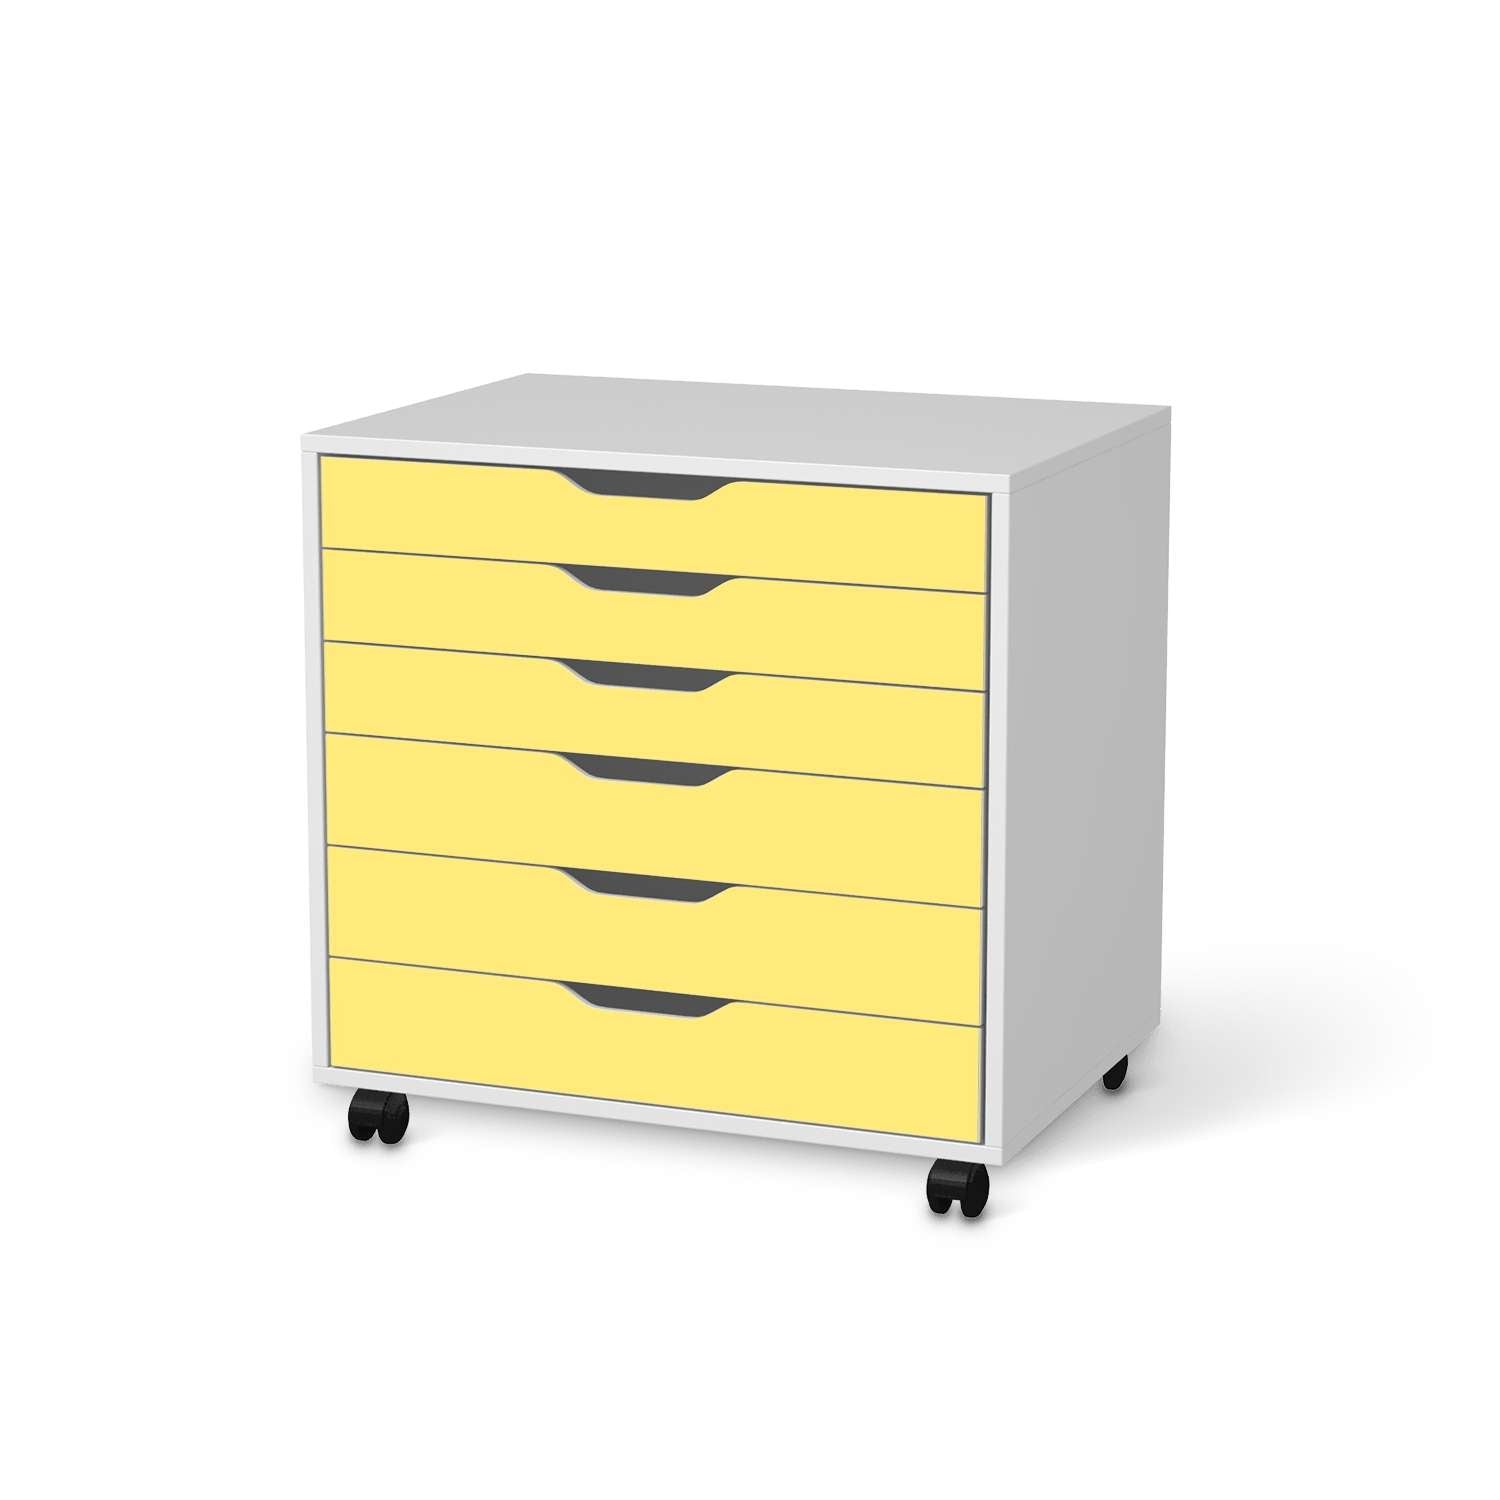 M?belfolie IKEA Alex Rollcontainer 6 Schubladen - Design: Gelb Light von creatisto